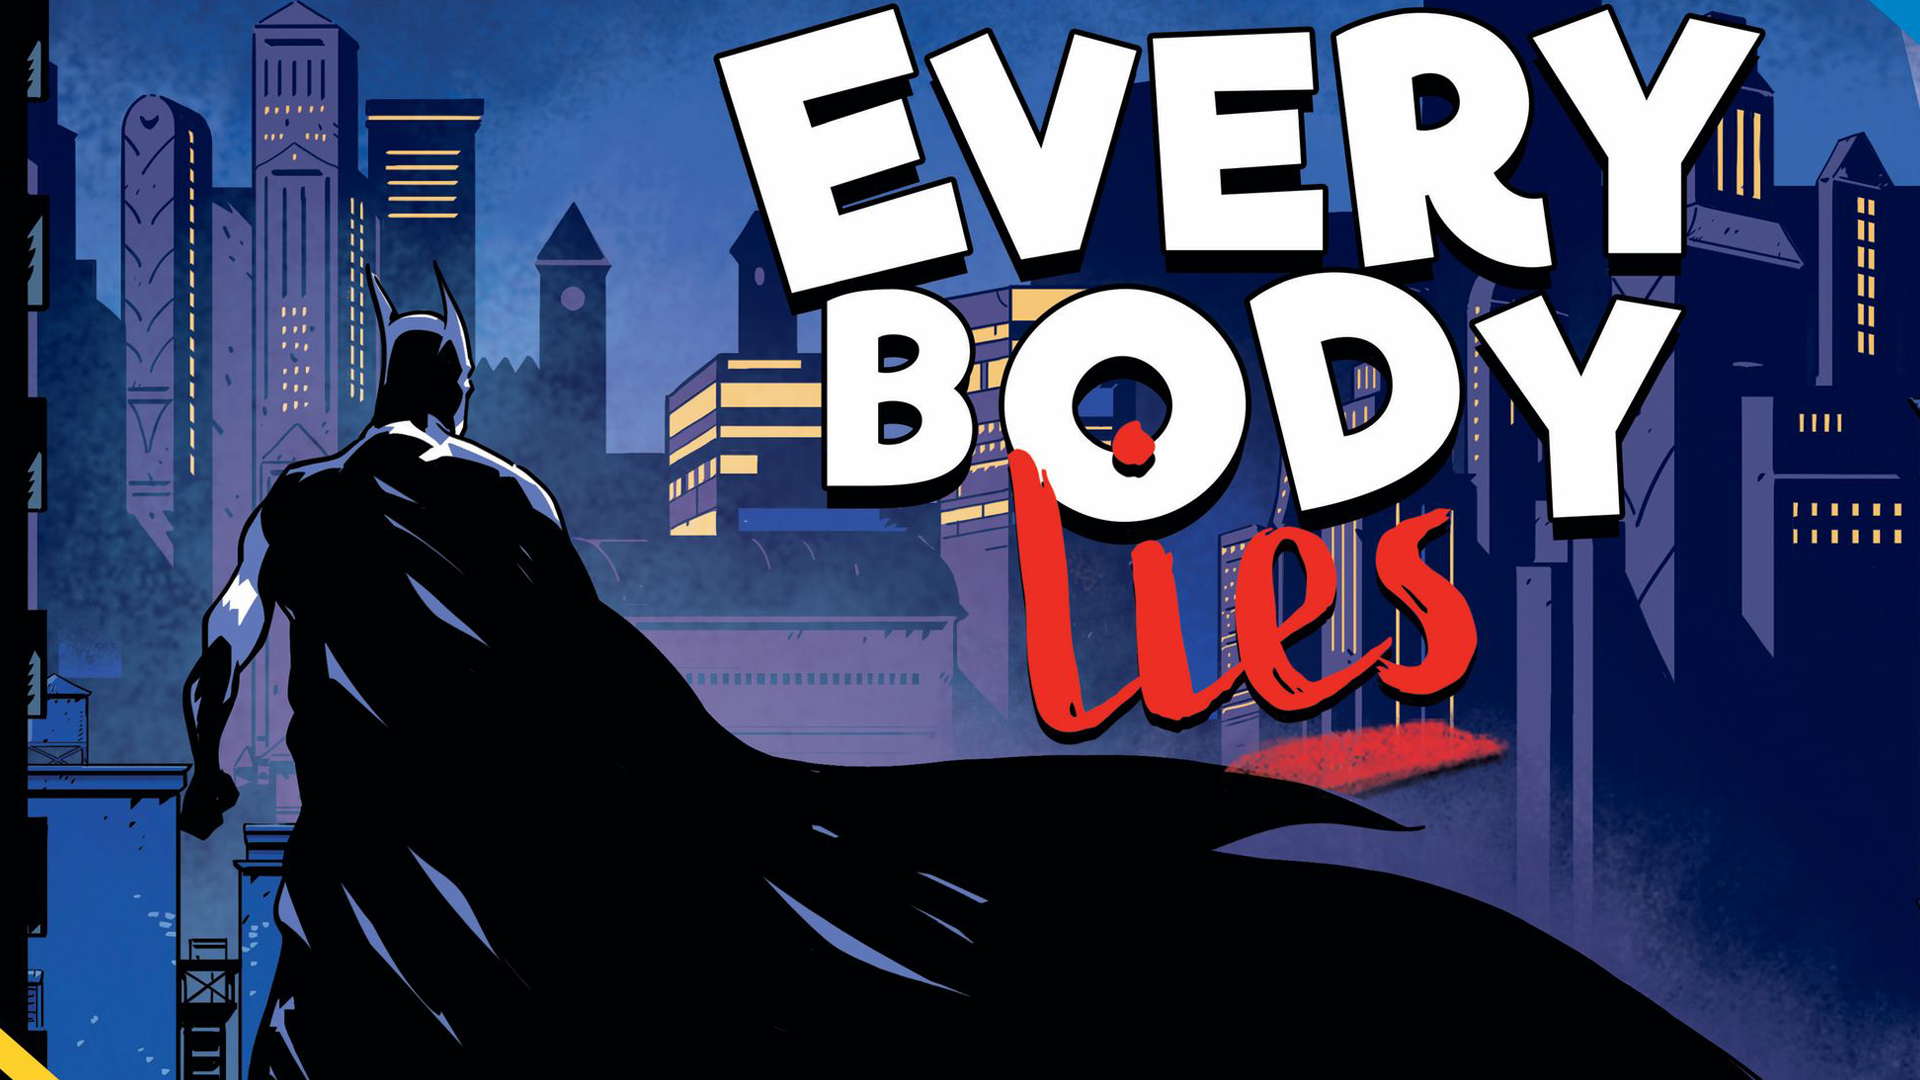 Batman: Everybody Lies board game artwork